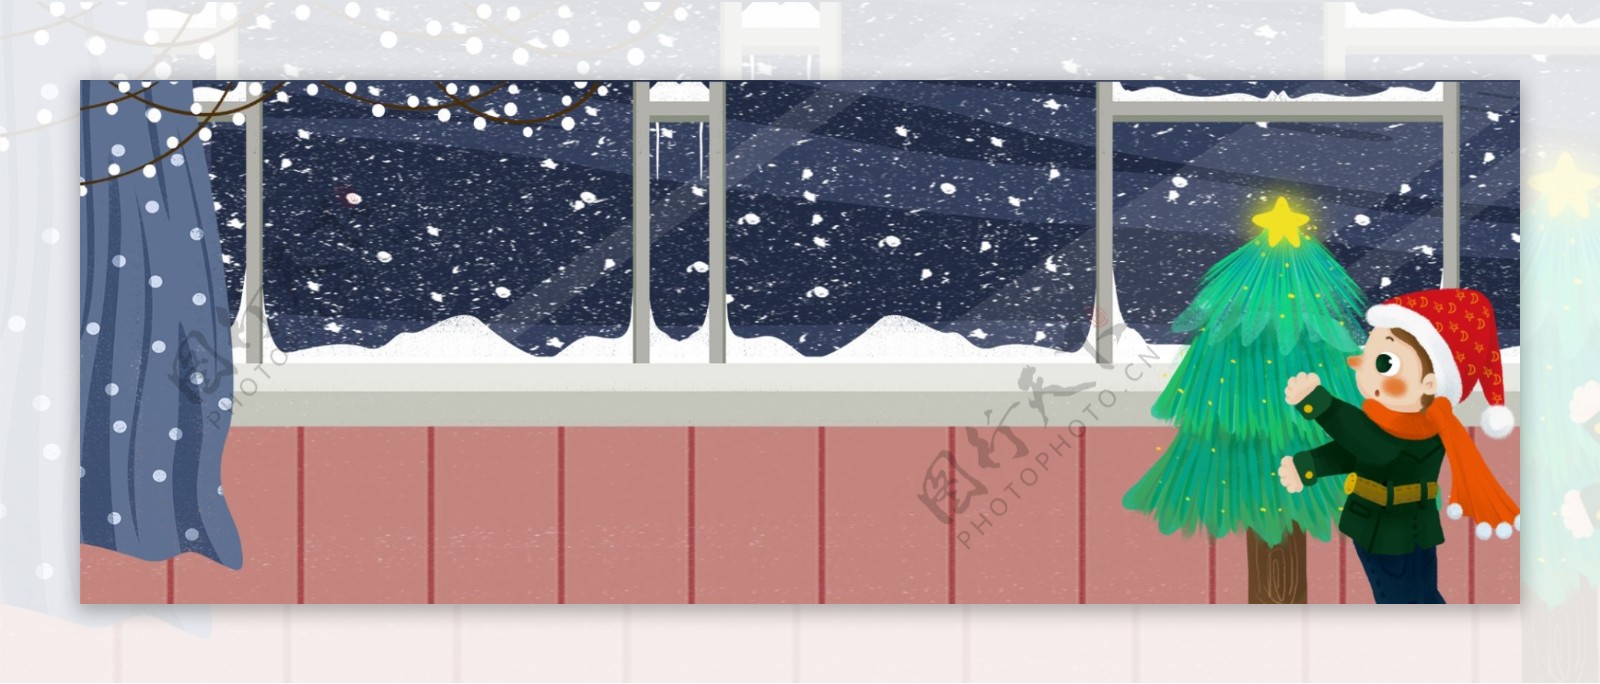 冬日窗前装饰圣诞树的男孩插画背景